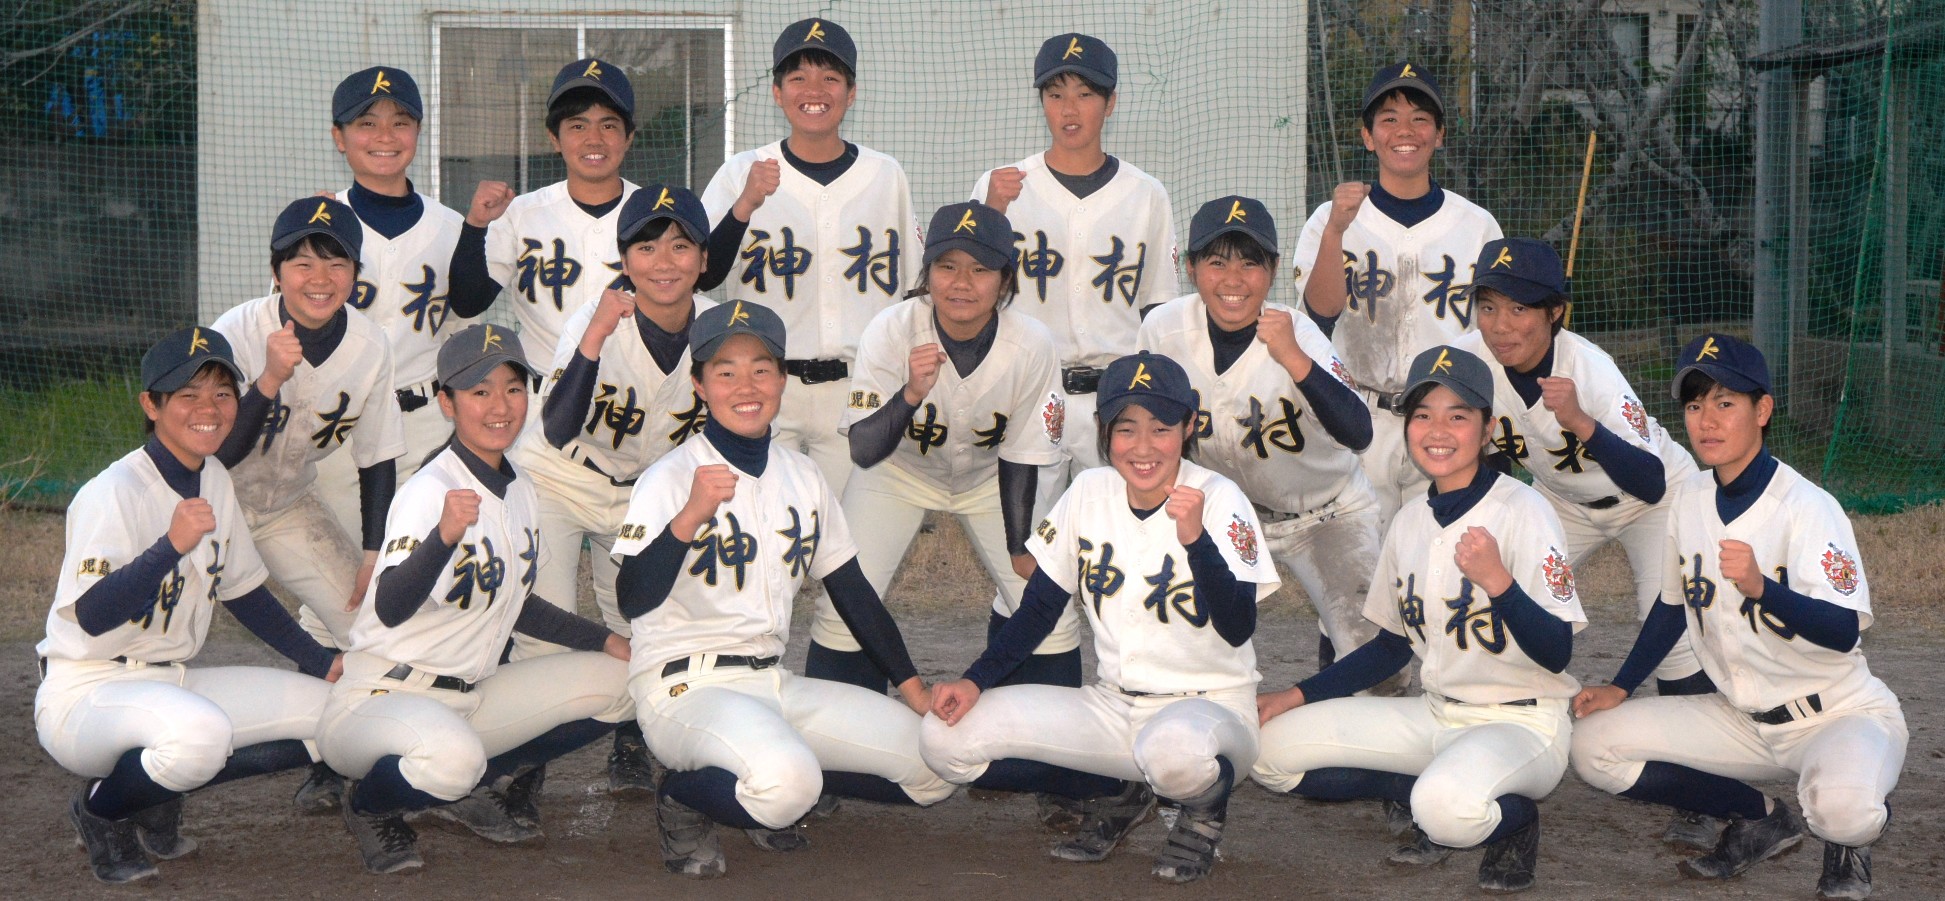 スポーツかごんまニュース野球部訪問 神村学園女子 高校野球ドットコム